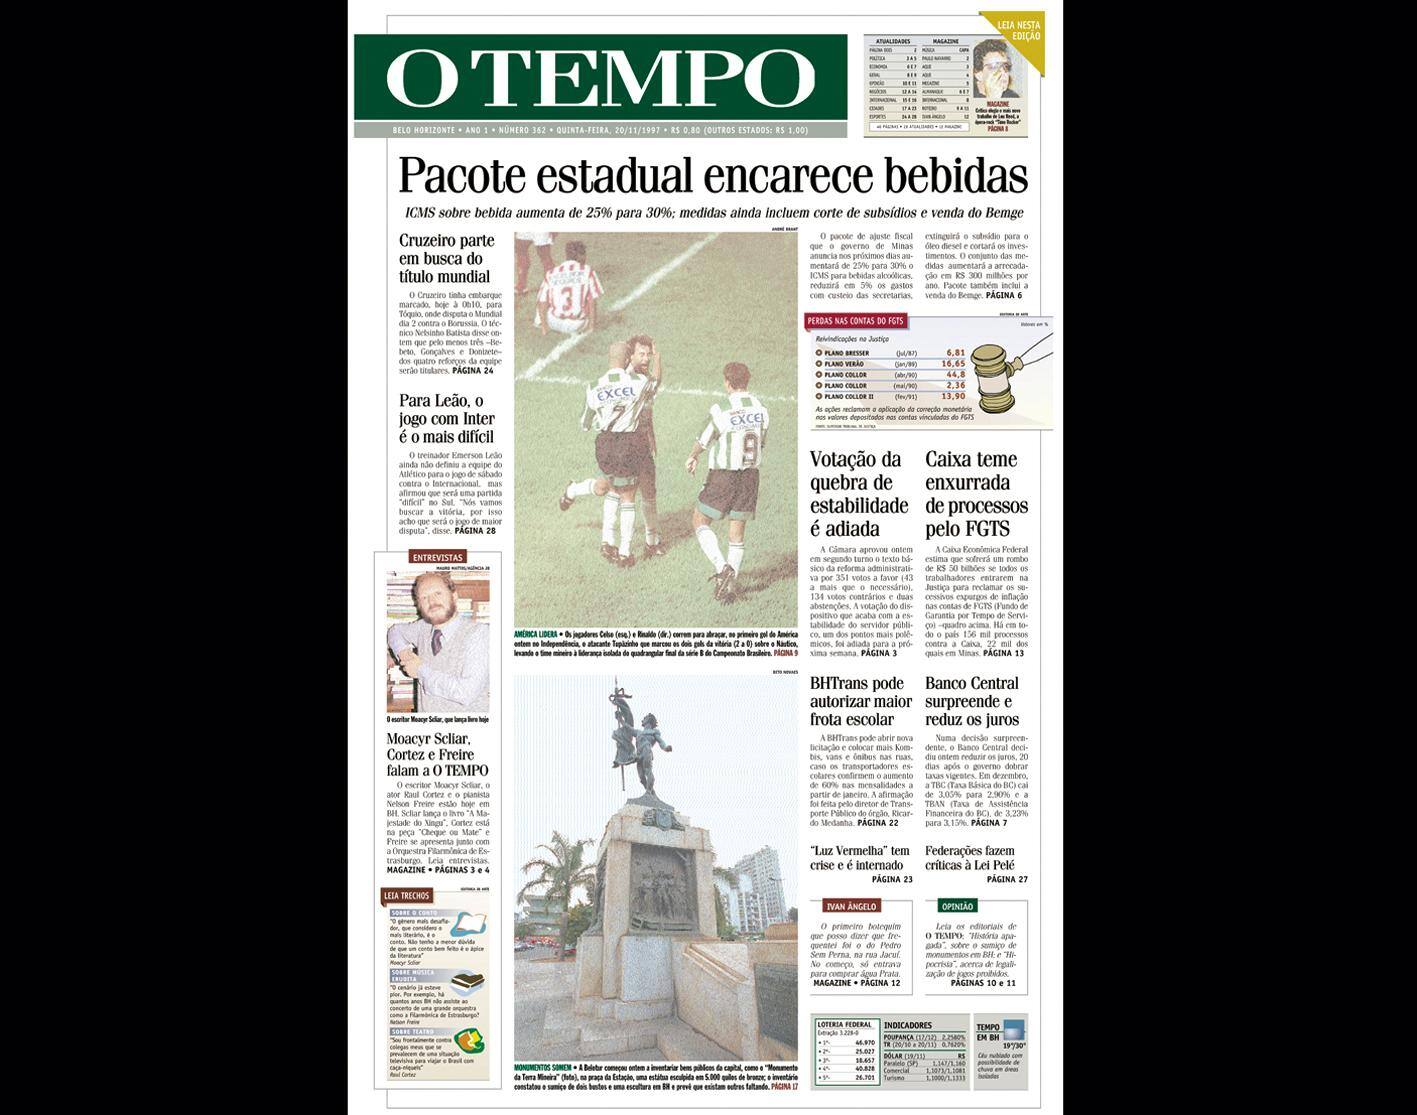 Capa do jornal O TEMPO no dia 20.11.1997; resgate do acervo marca as comemorações dos 25 anos da publicação